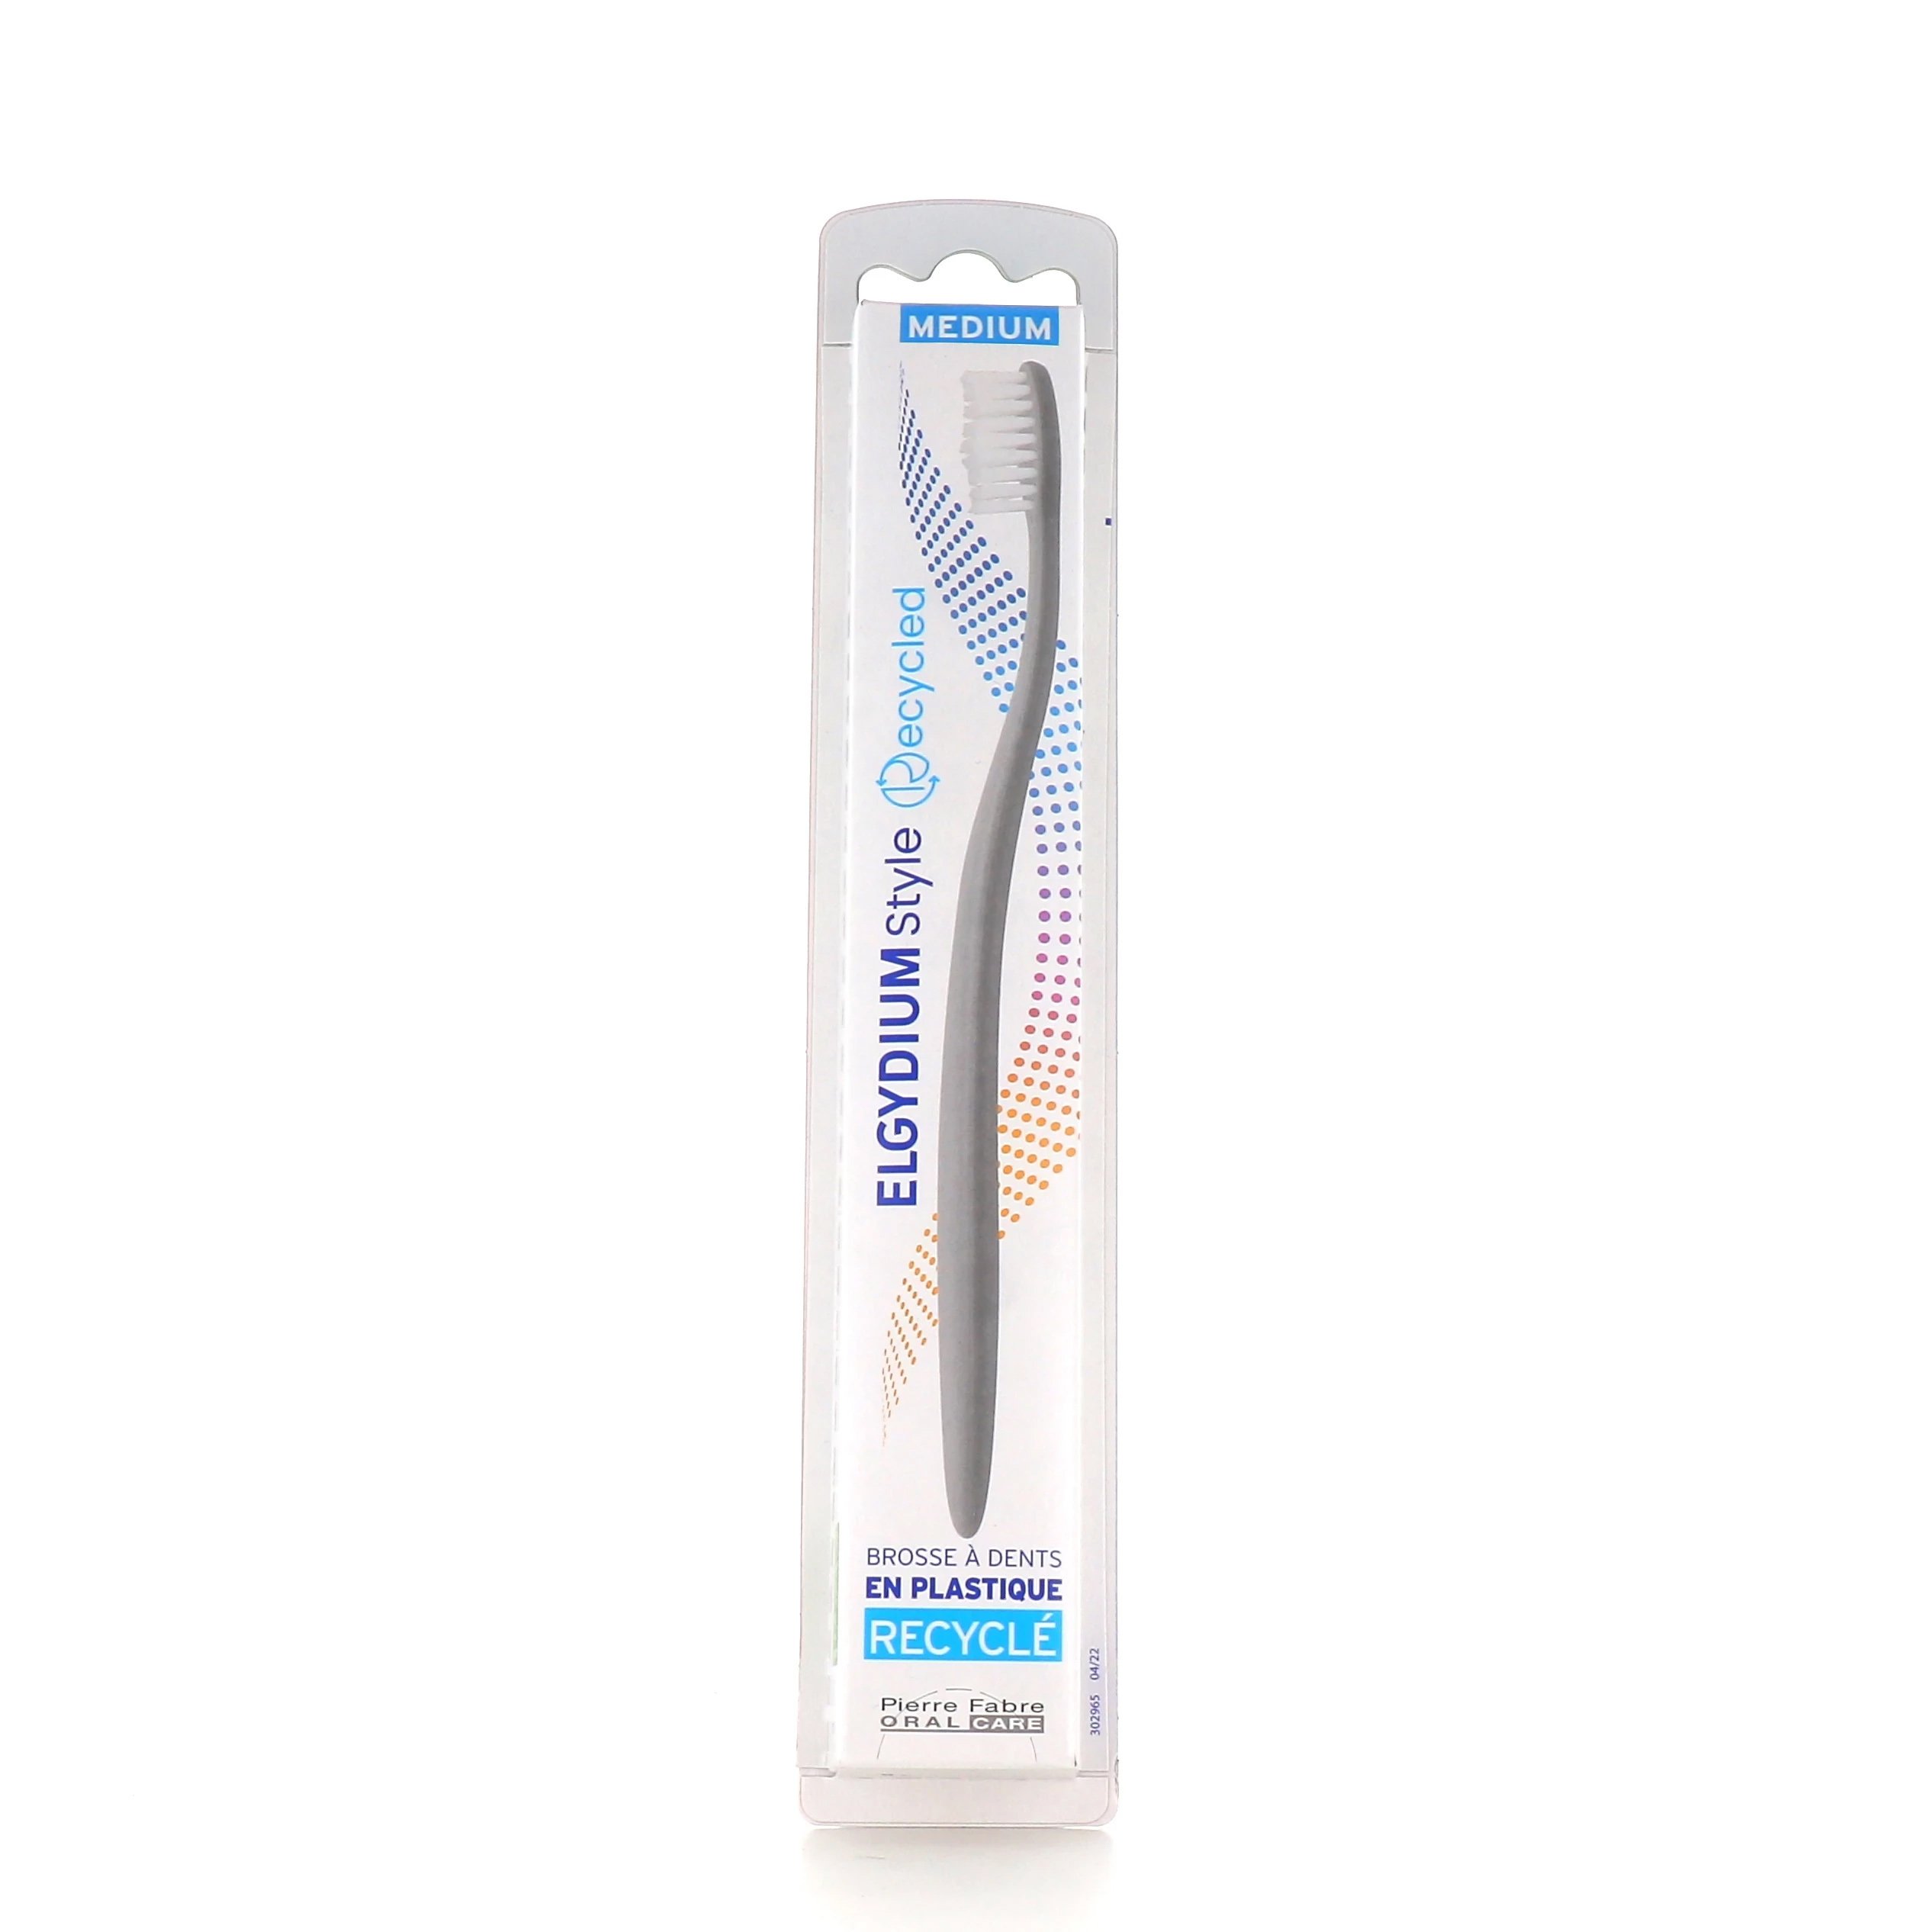 Elgydium Style Recycled Toothbrush Medium Χειροκίνητη Οδοντόβουρτσα Κατασκευασμένη Από Ανακυκλώσιμα Υλικά 1 Τεμάχιο – Γκρι